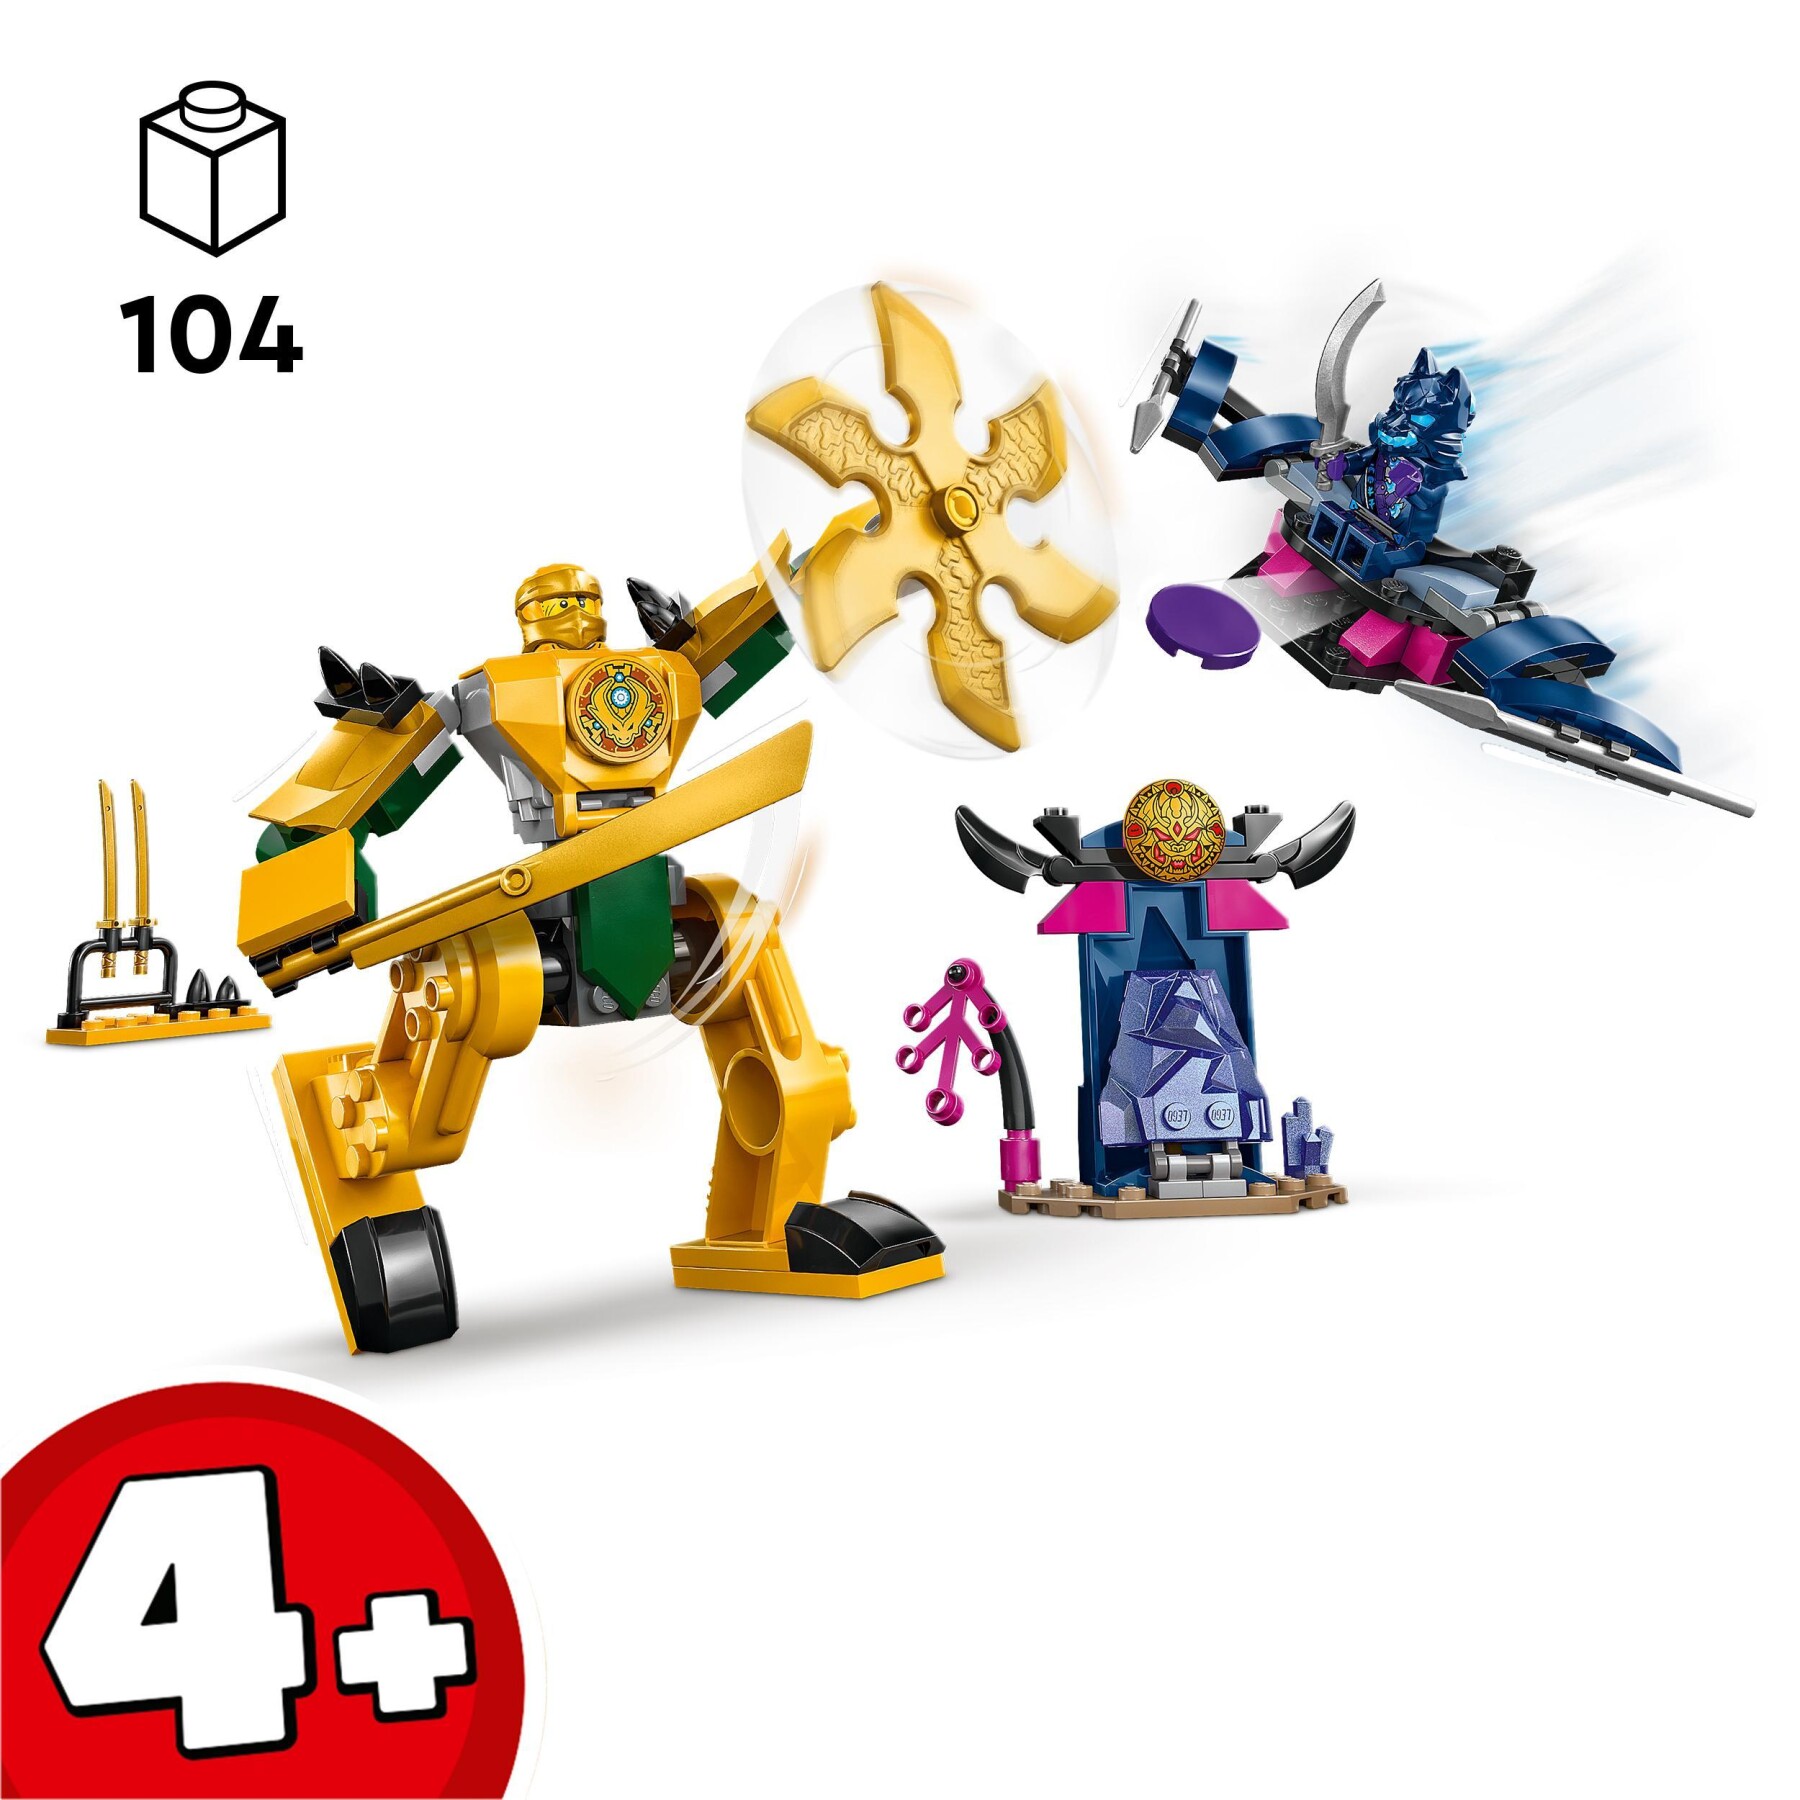 Lego ninjago 71804 mech da battaglia di arin, giochi per bambini 4+, action figure giocattolo da costruire con starter brick - LEGO NINJAGO